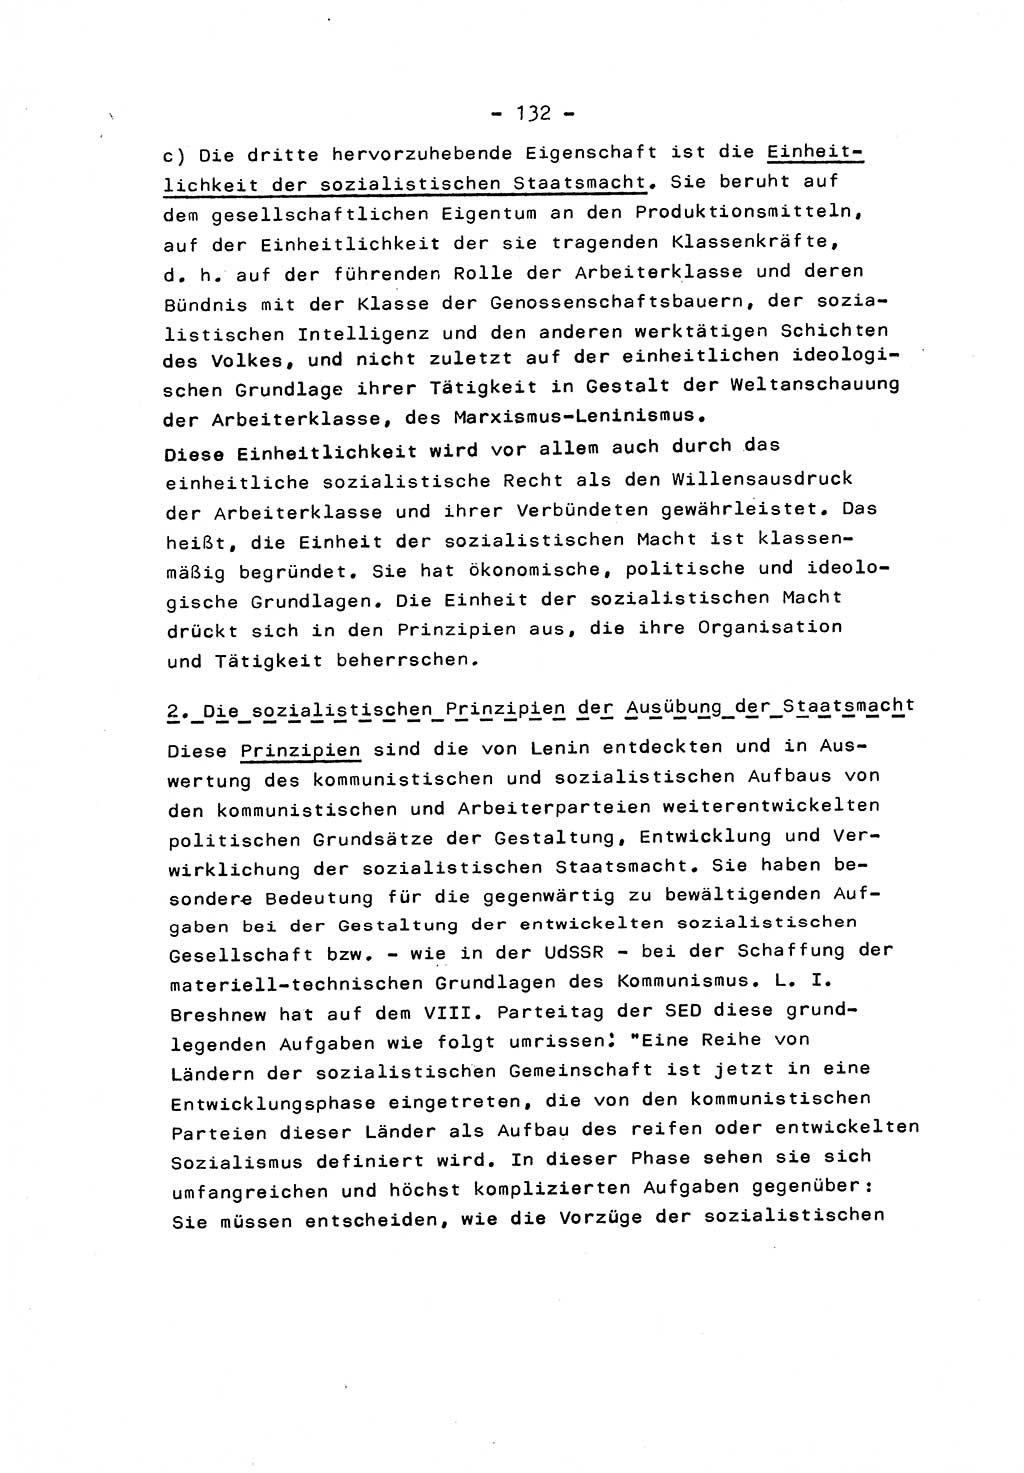 Marxistisch-leninistische Staats- und Rechtstheorie [Deutsche Demokratische Republik (DDR)] 1975, Seite 132 (ML St.-R.-Th. DDR 1975, S. 132)